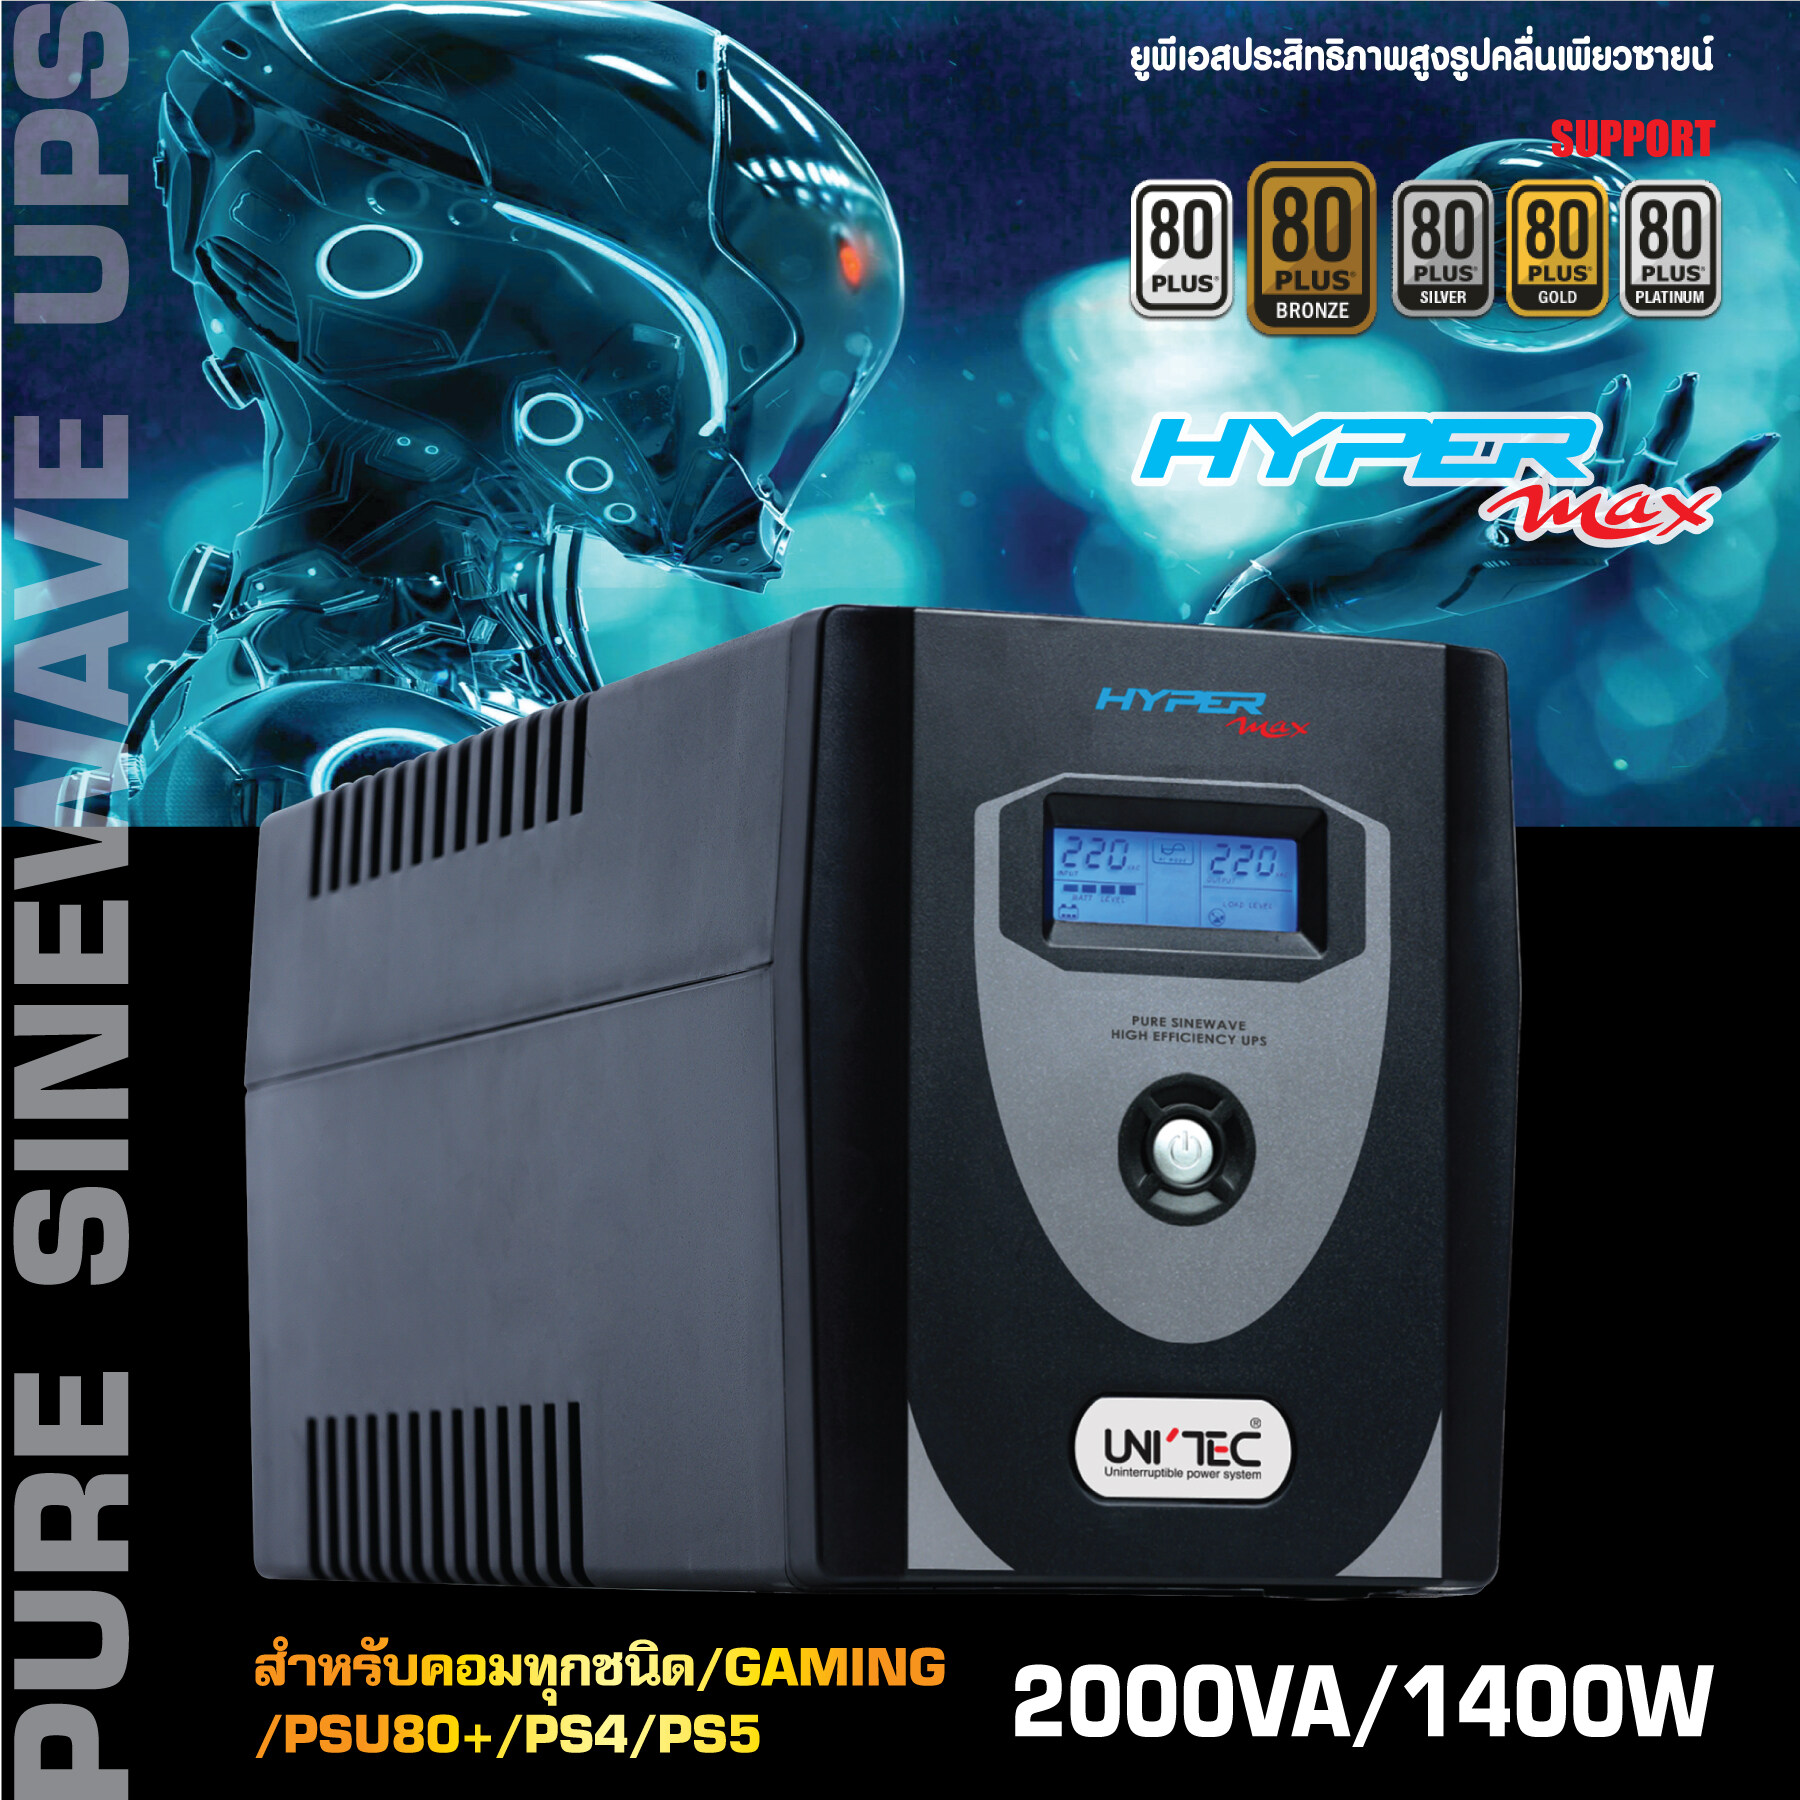 PURE SINEWAVE UPS : HYPERMAX-2000VA/1400W ซายน์เวฟ100% สำหรับคอมทุกชนิด/คอมประกอบ/PSU80+/GAMING/iMac,PS4/PS5 สำรองไฟ 20-40นาที รับประกัน 2 ปี